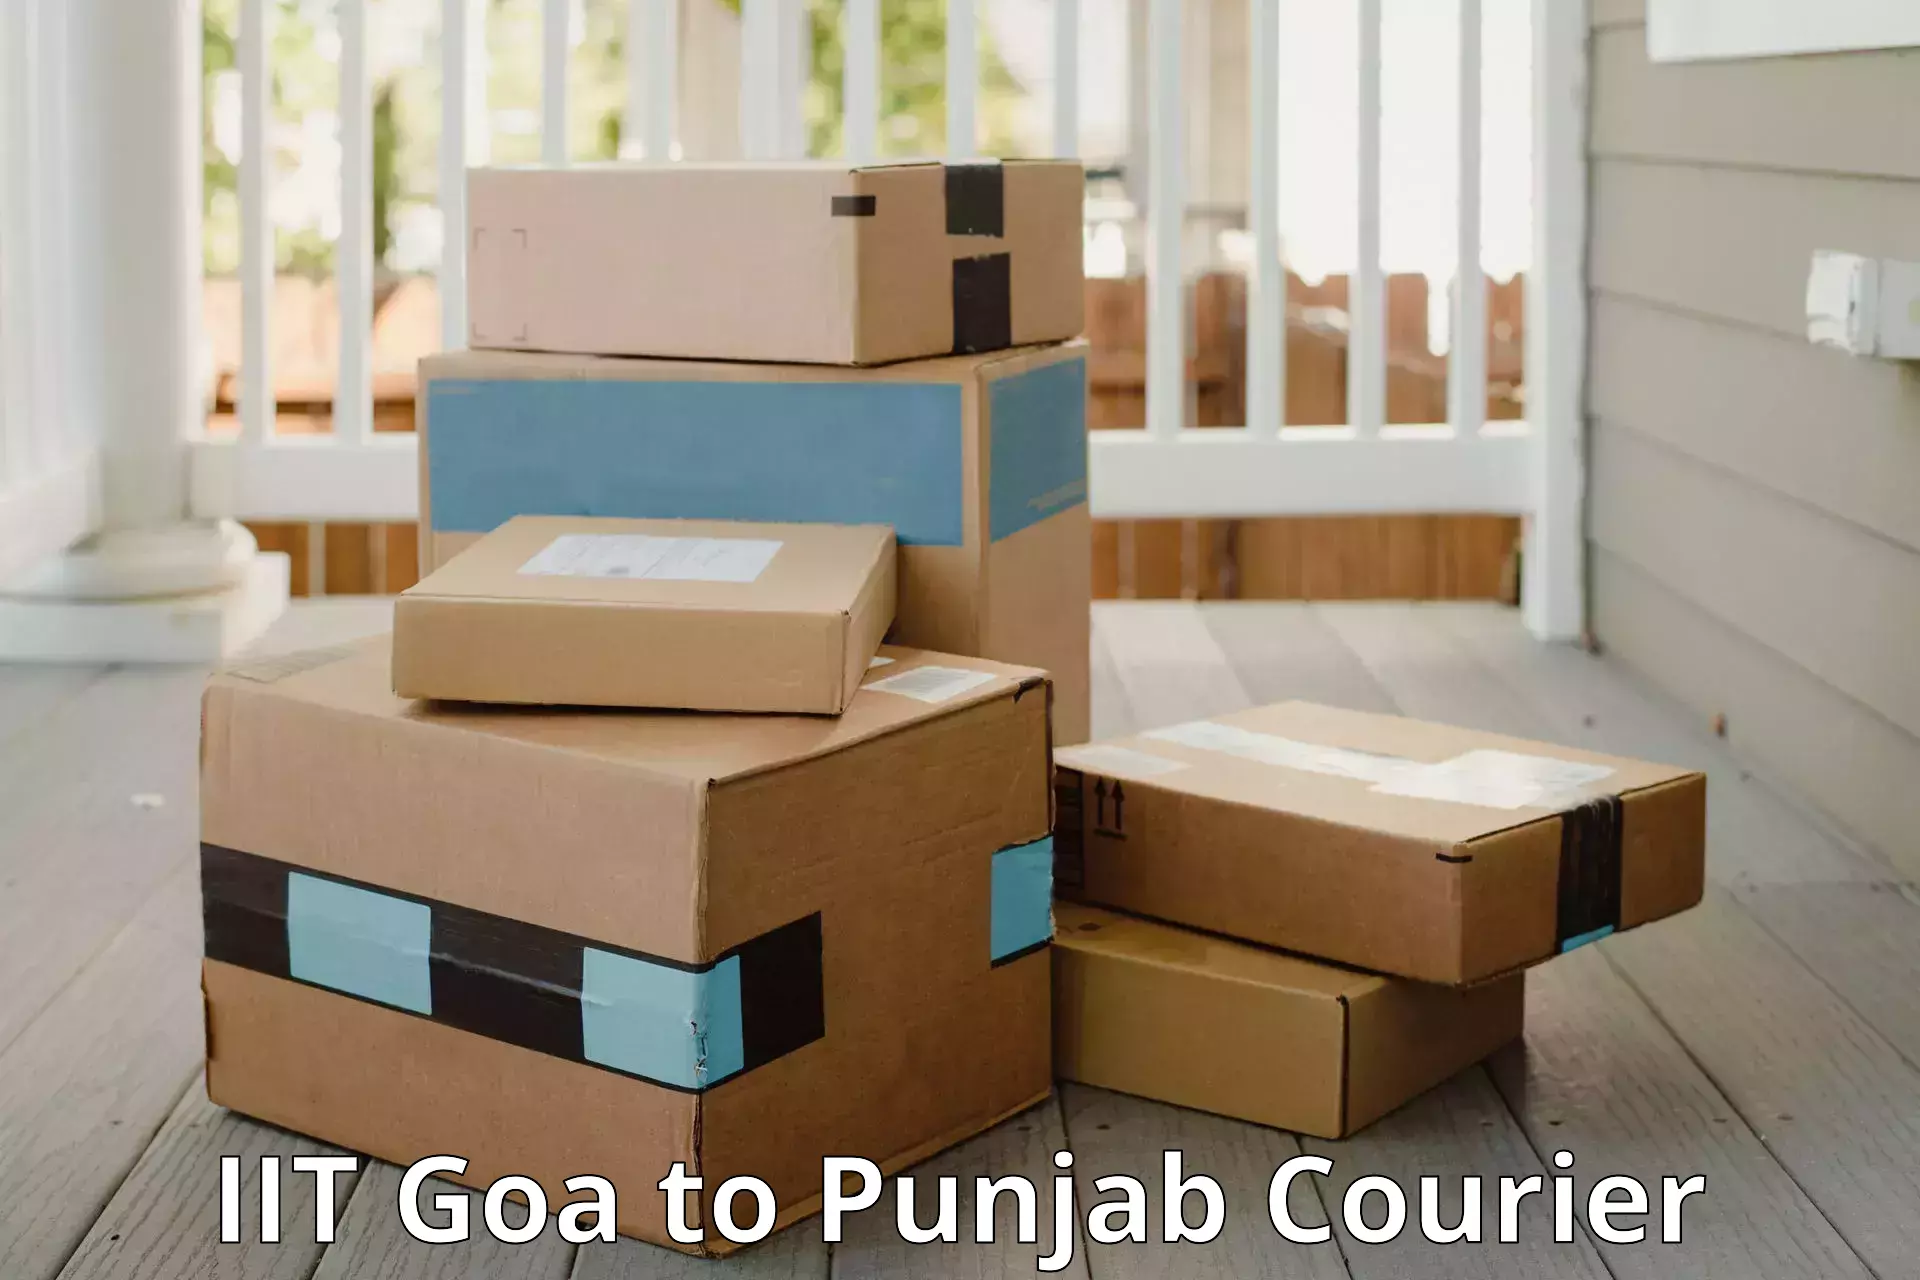 Baggage transport technology IIT Goa to Punjab